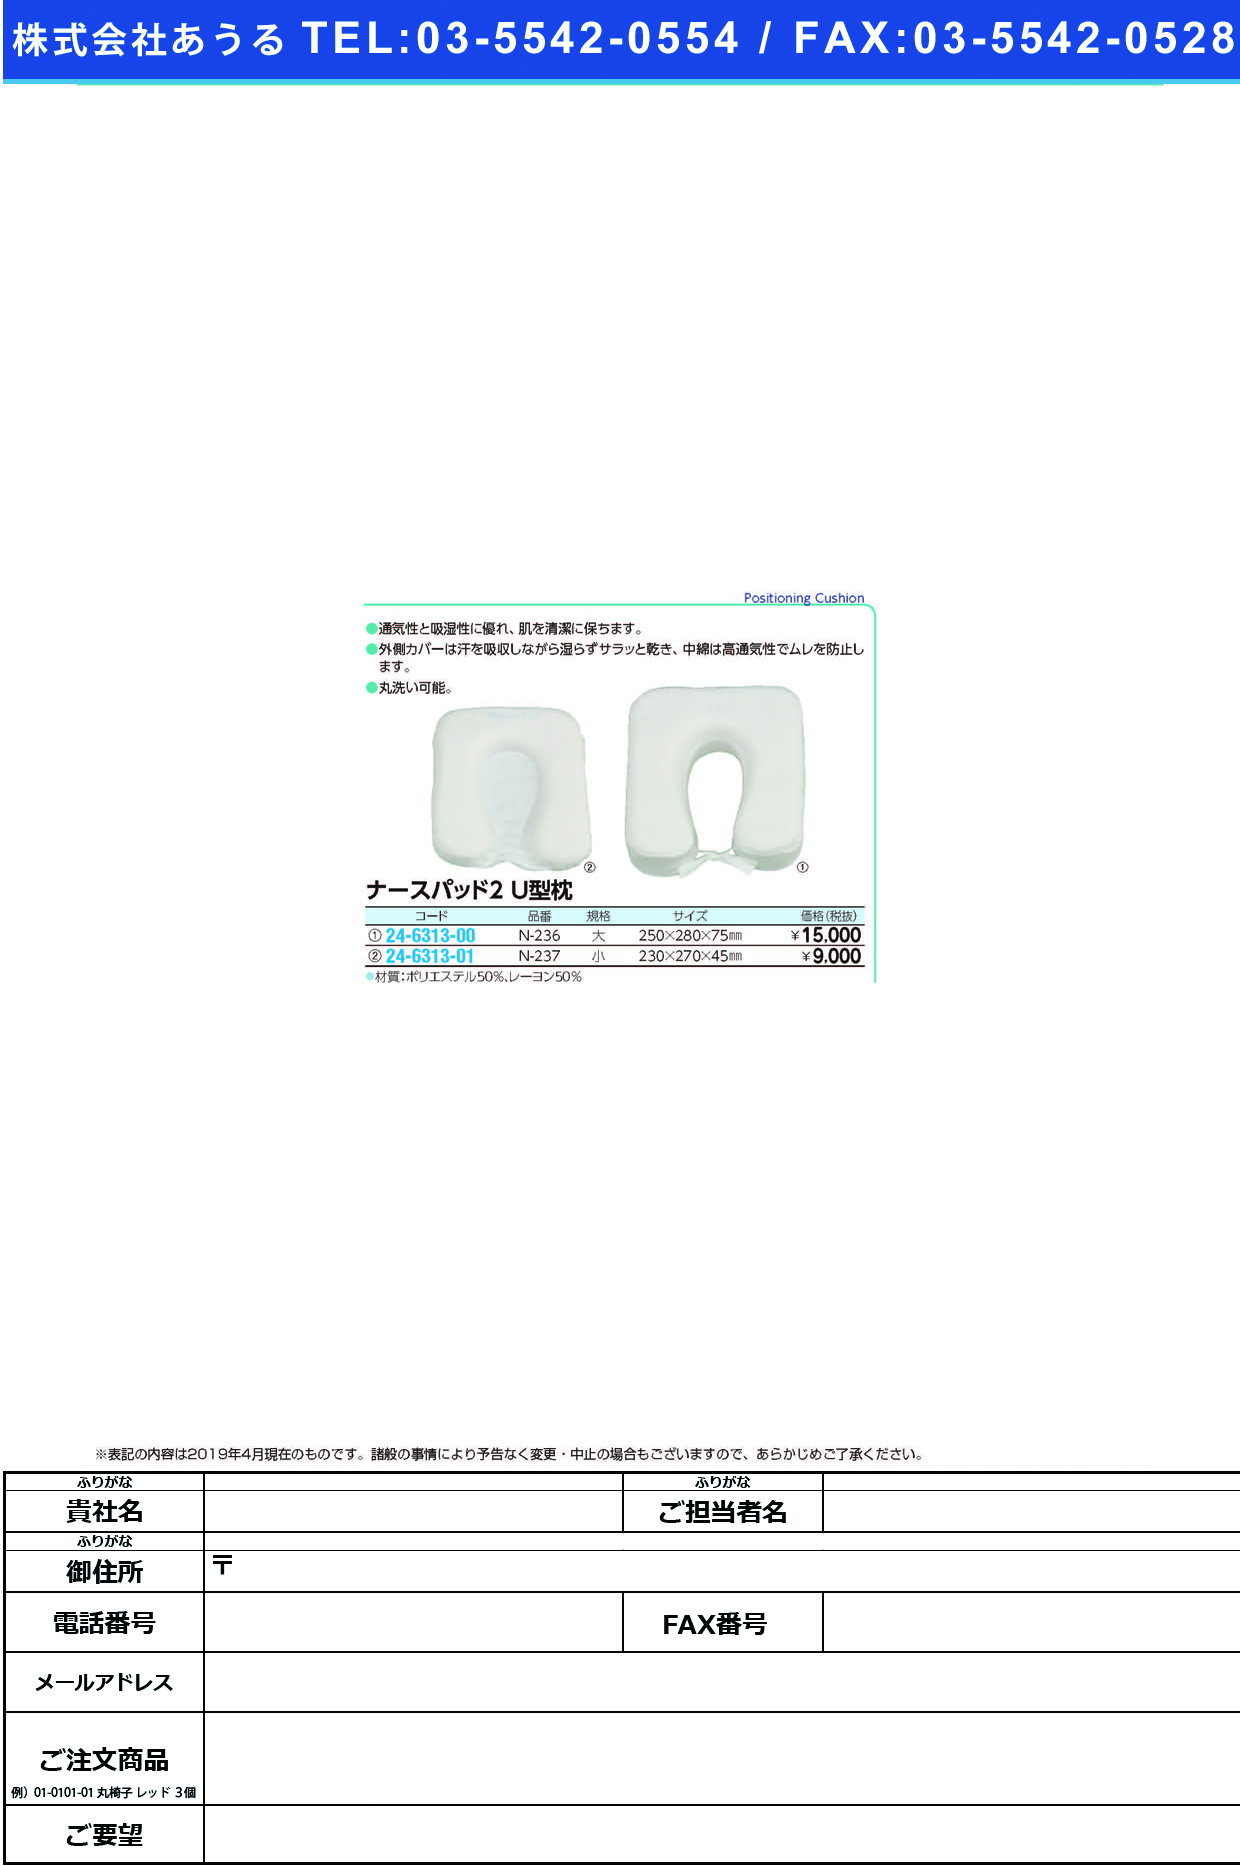 (24-6313-01)ナースパット２Ｕ型枕 N-237(ｼｮｳ) ﾅｰｽﾊﾟｯﾄ2Uｶﾞﾀﾏｸﾗ【1個単位】【2019年カタログ商品】